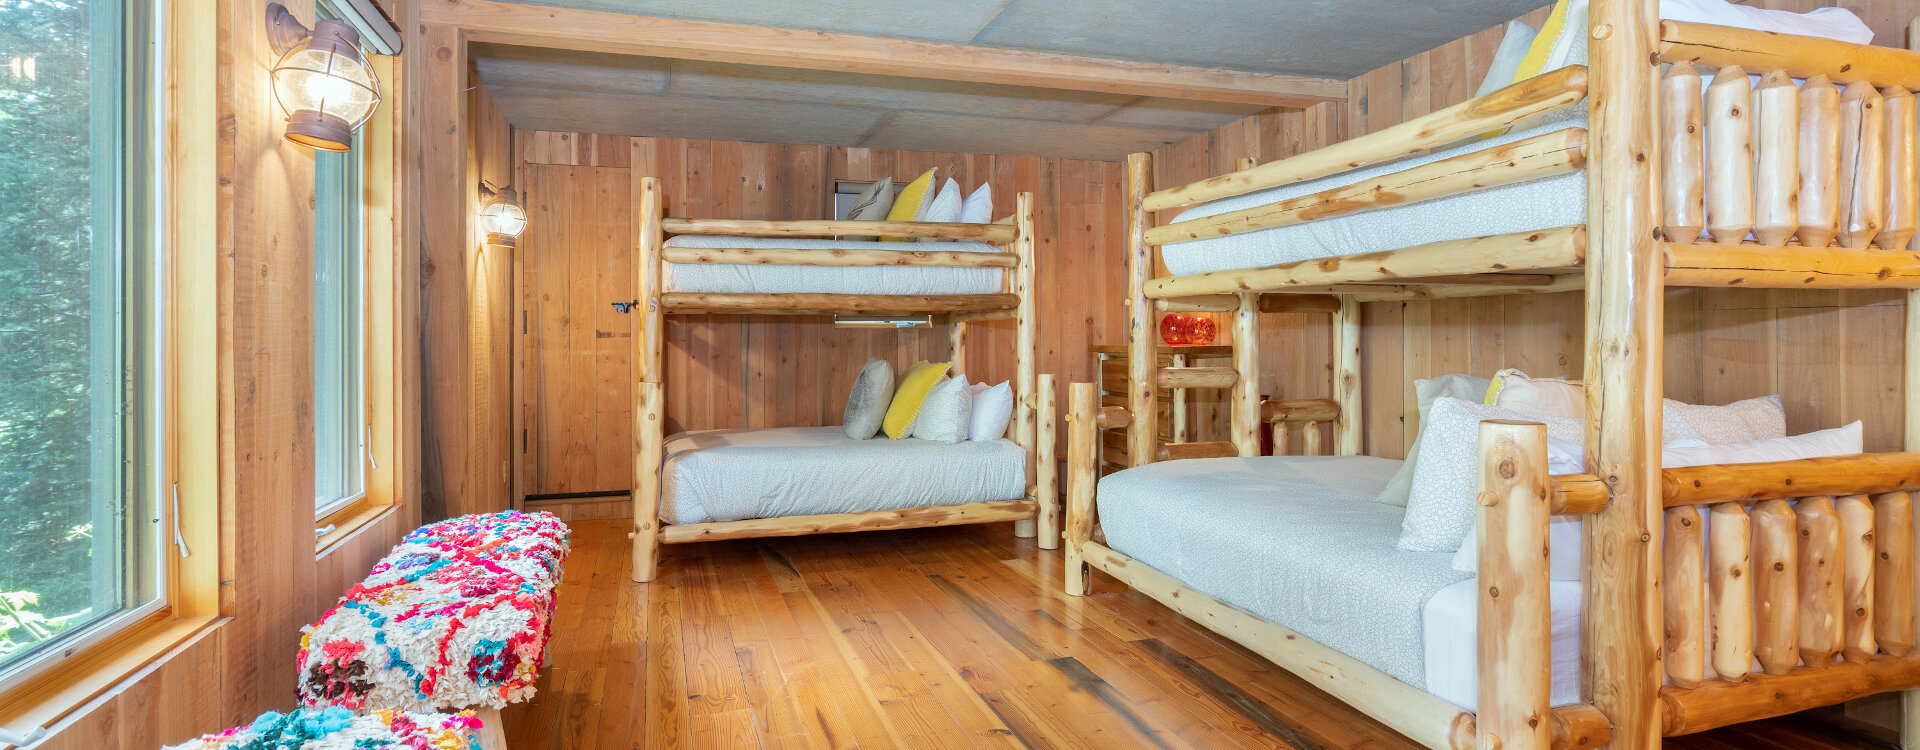 29-Telluride-Polar-Queen-Bunk-Room-Beds